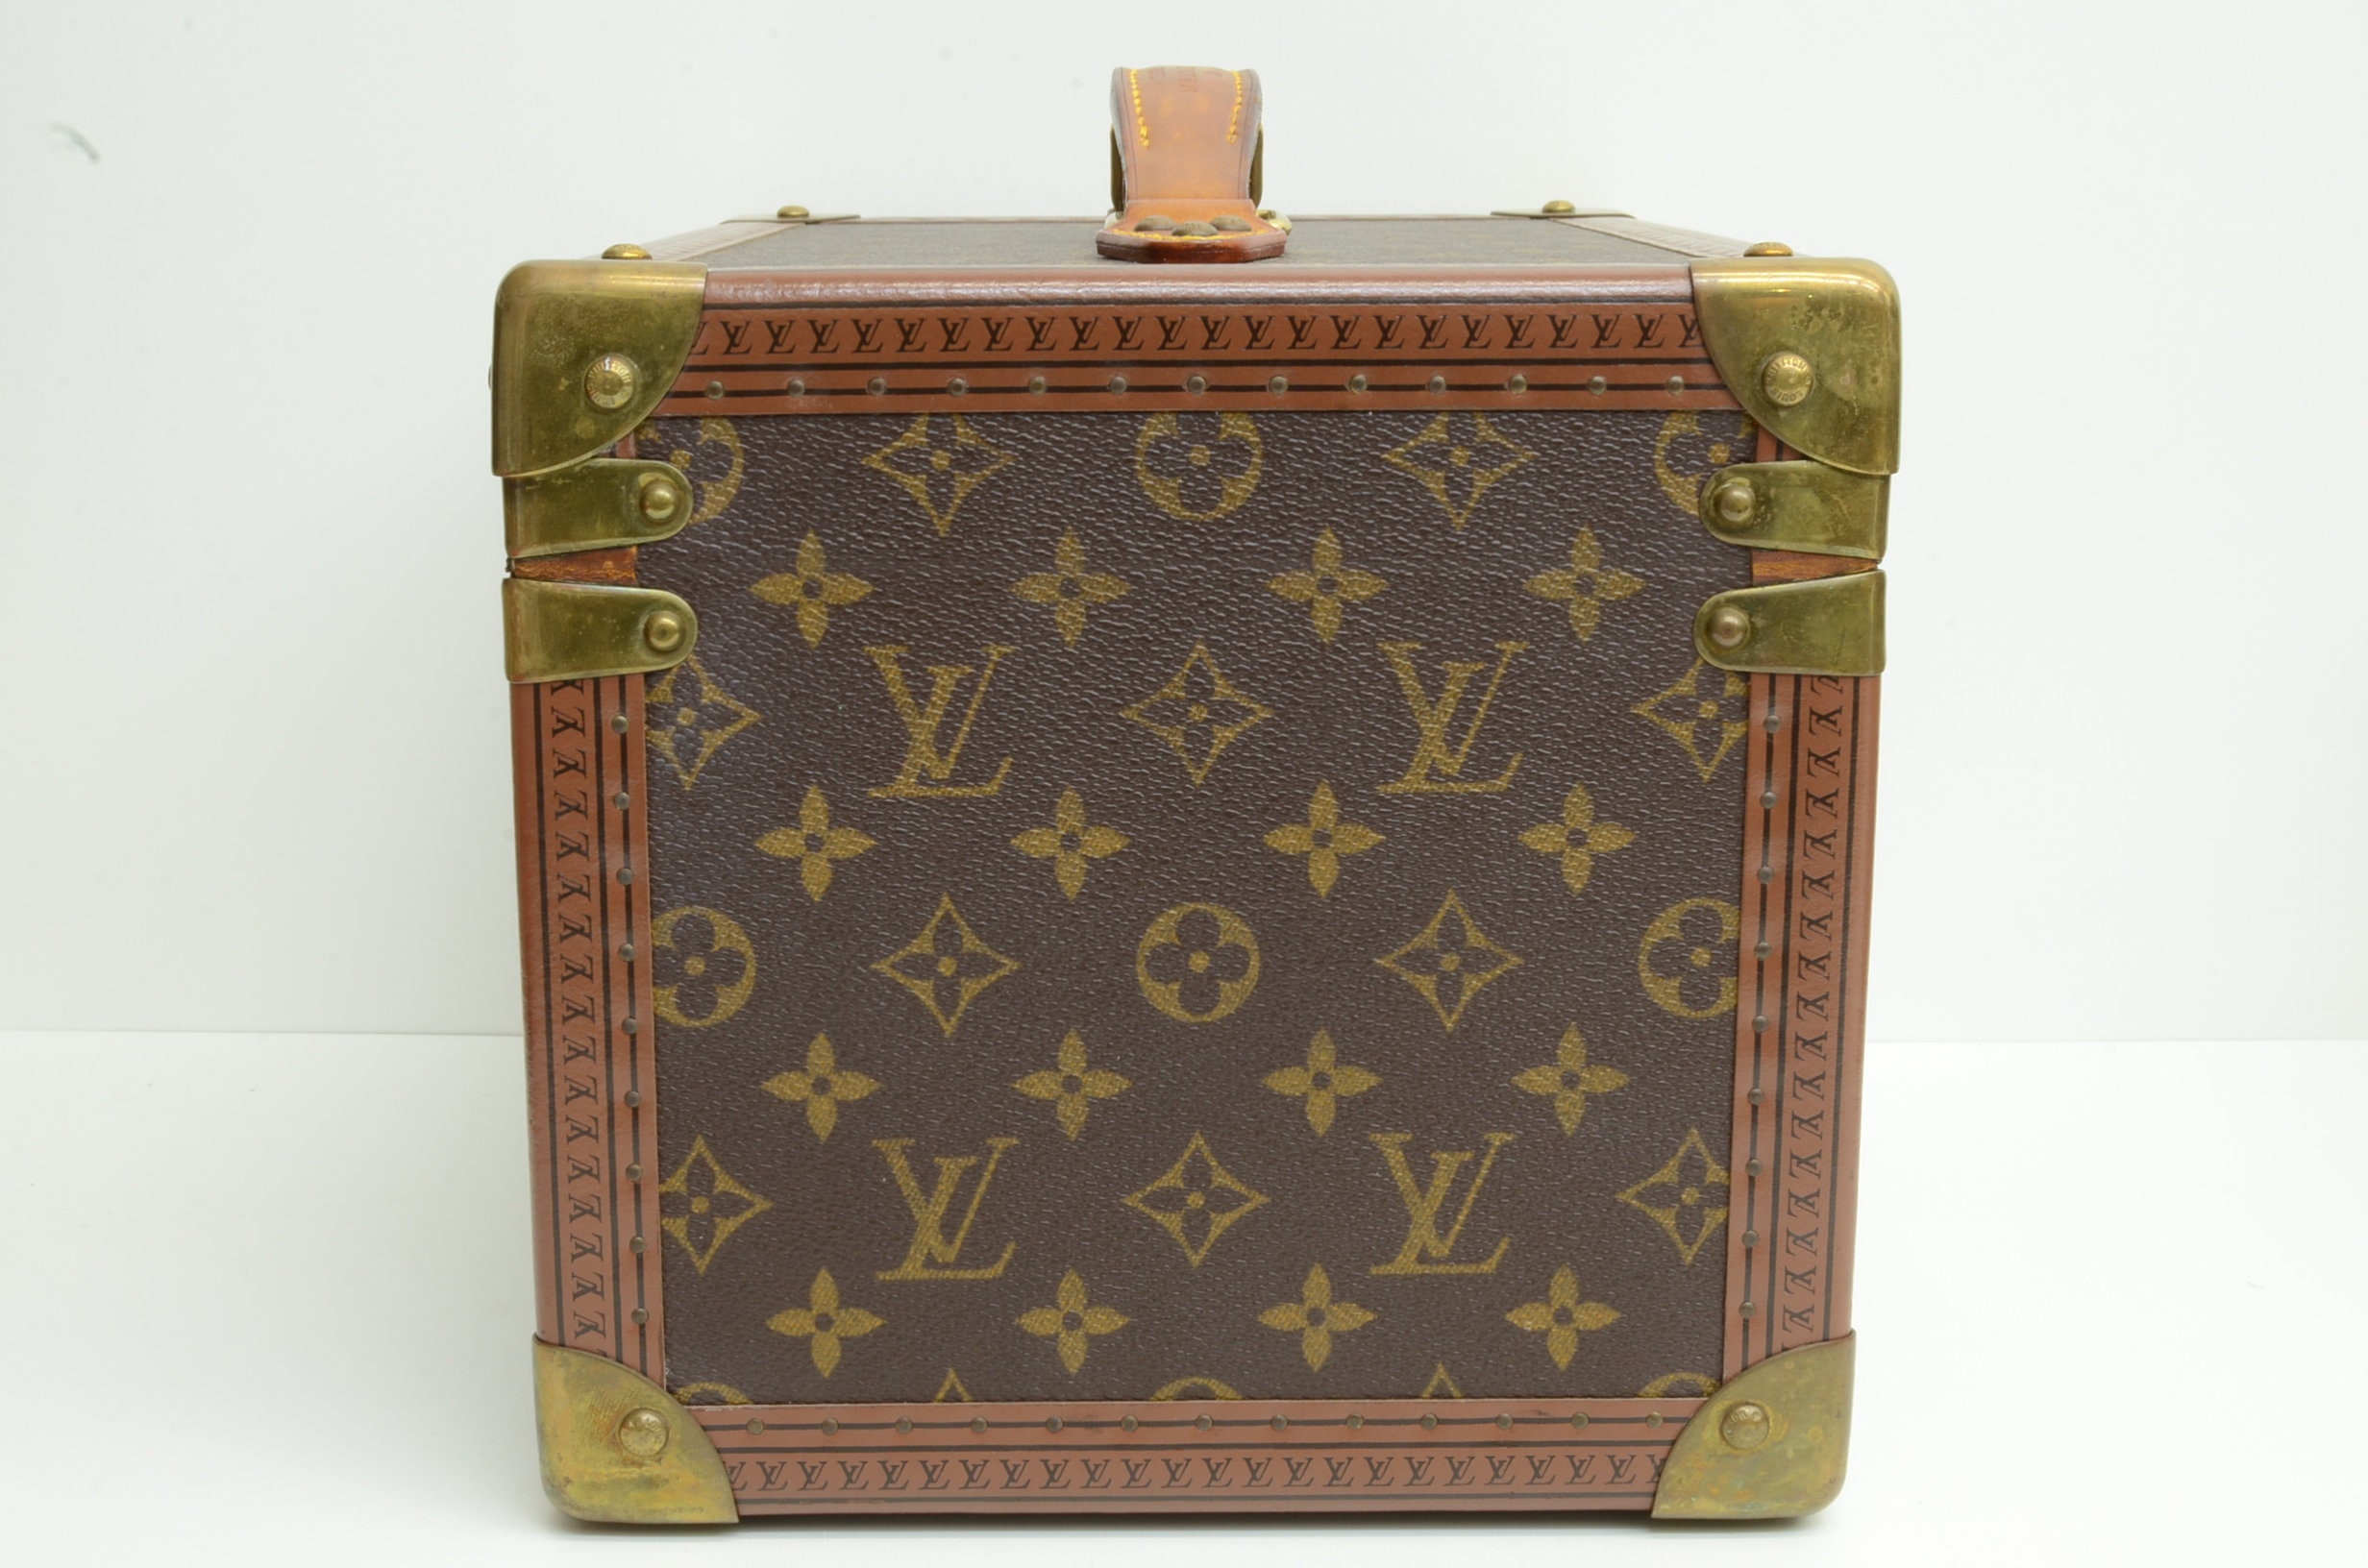 Louis Vuitton Vintage Louis Vuitton Boite Flacons Beauty Ebene Damier